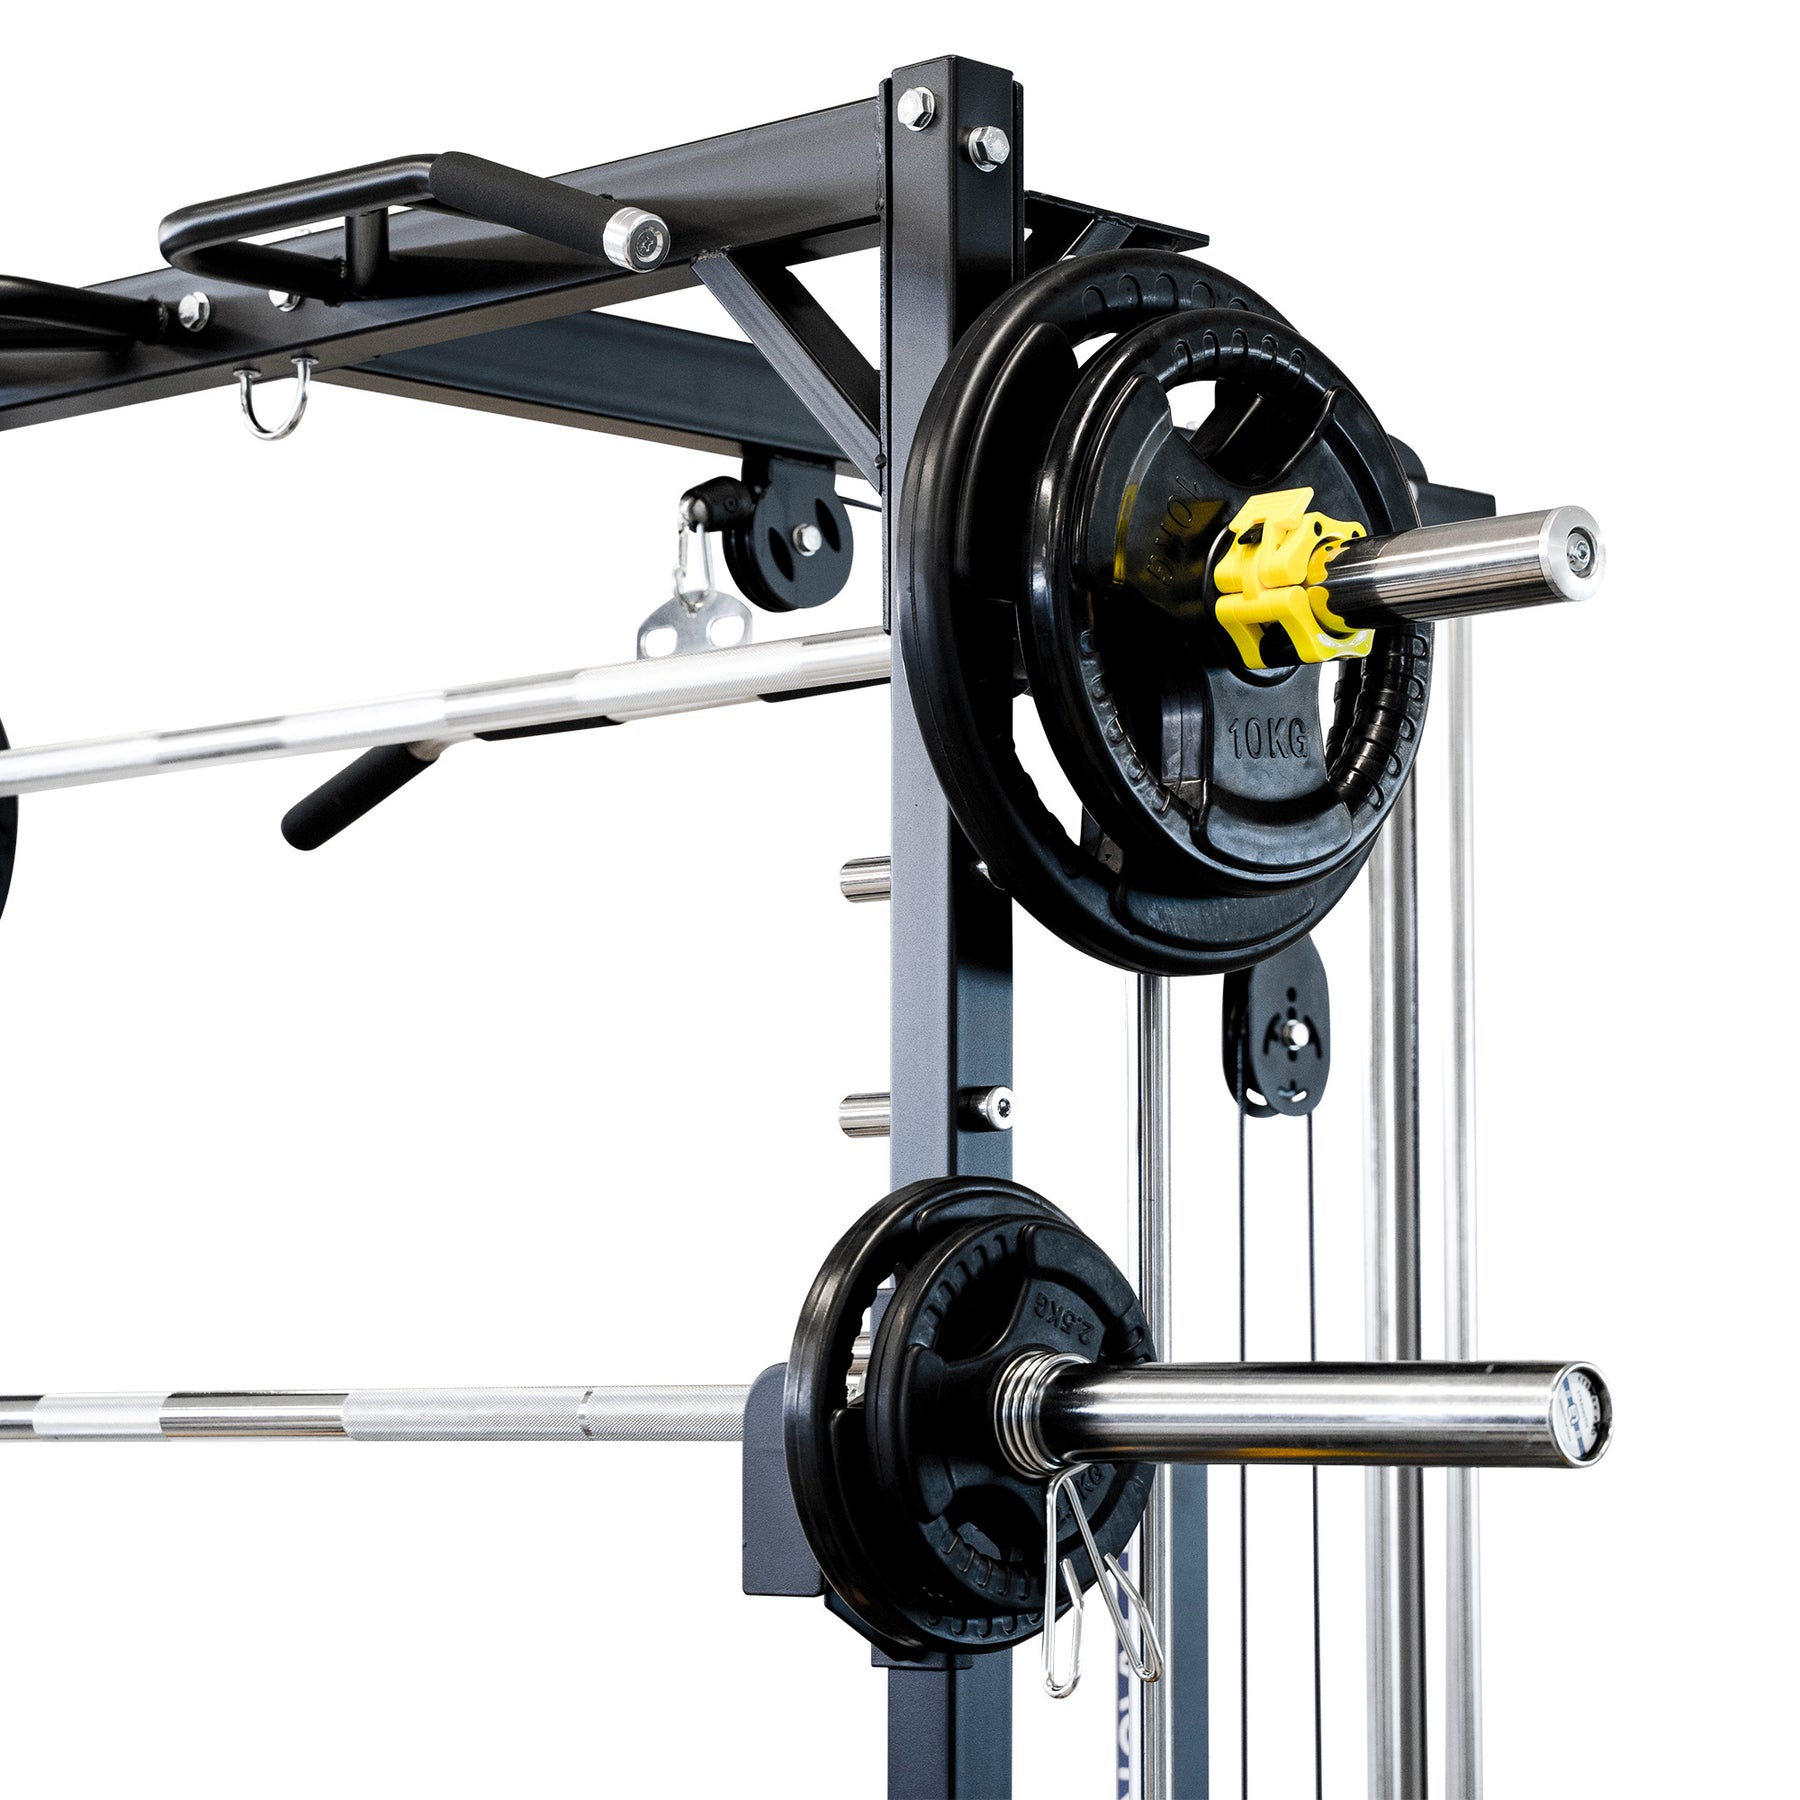 smith machine with squat rack - reeplex rm90 squat rack with smith machine